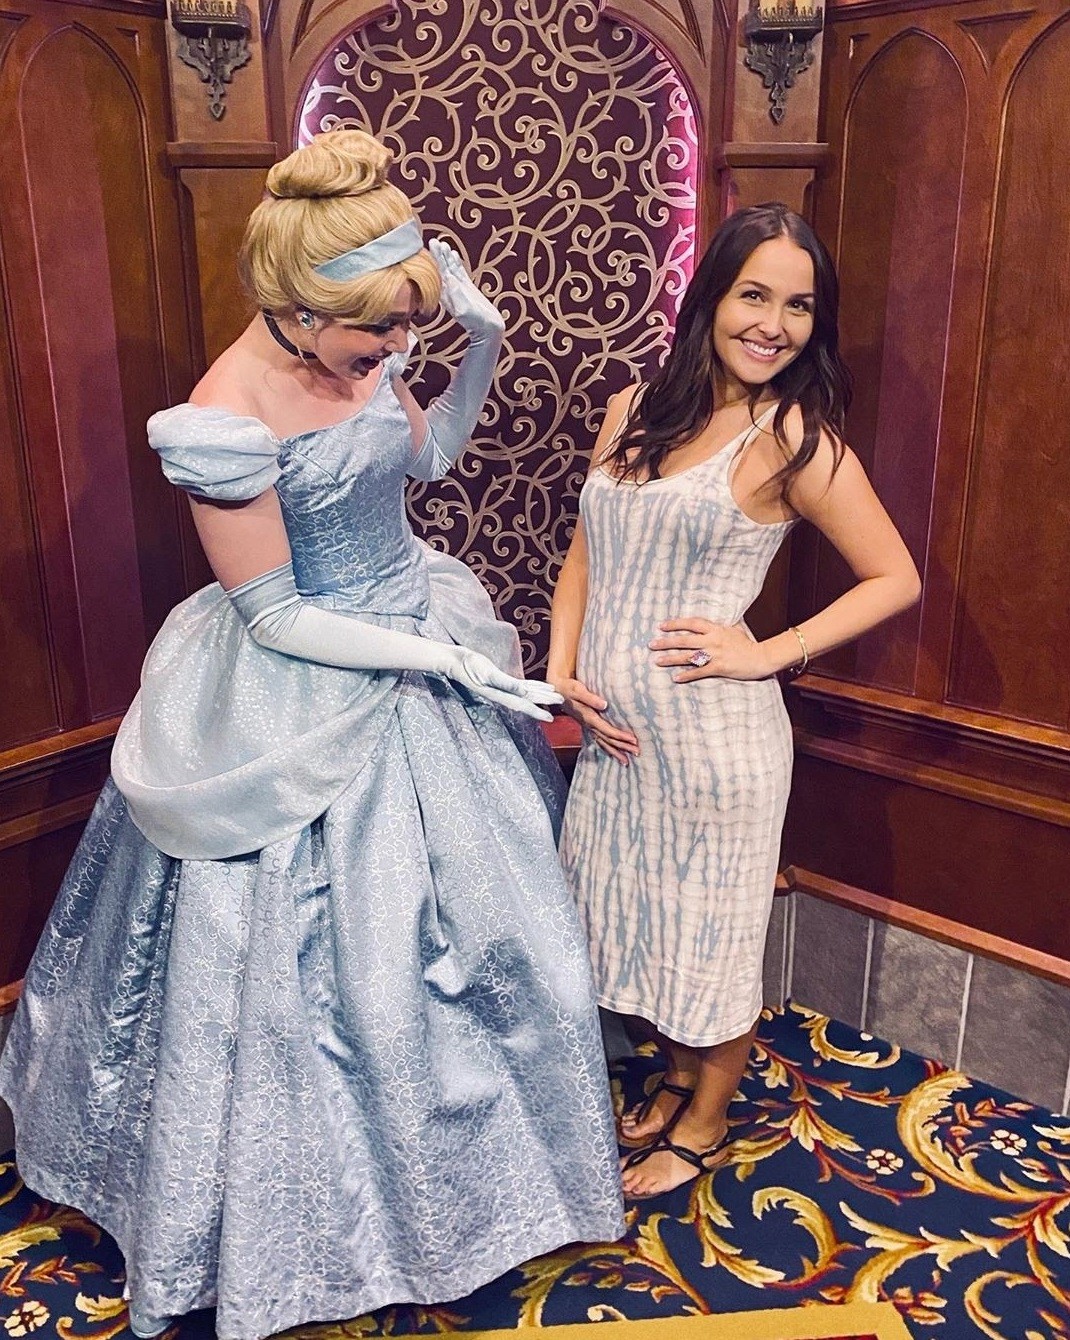 Atriz Camilla Luddington anuncia gravidez em foto com a princesa Cinderela  (Foto: Reprodução/ Instagram)